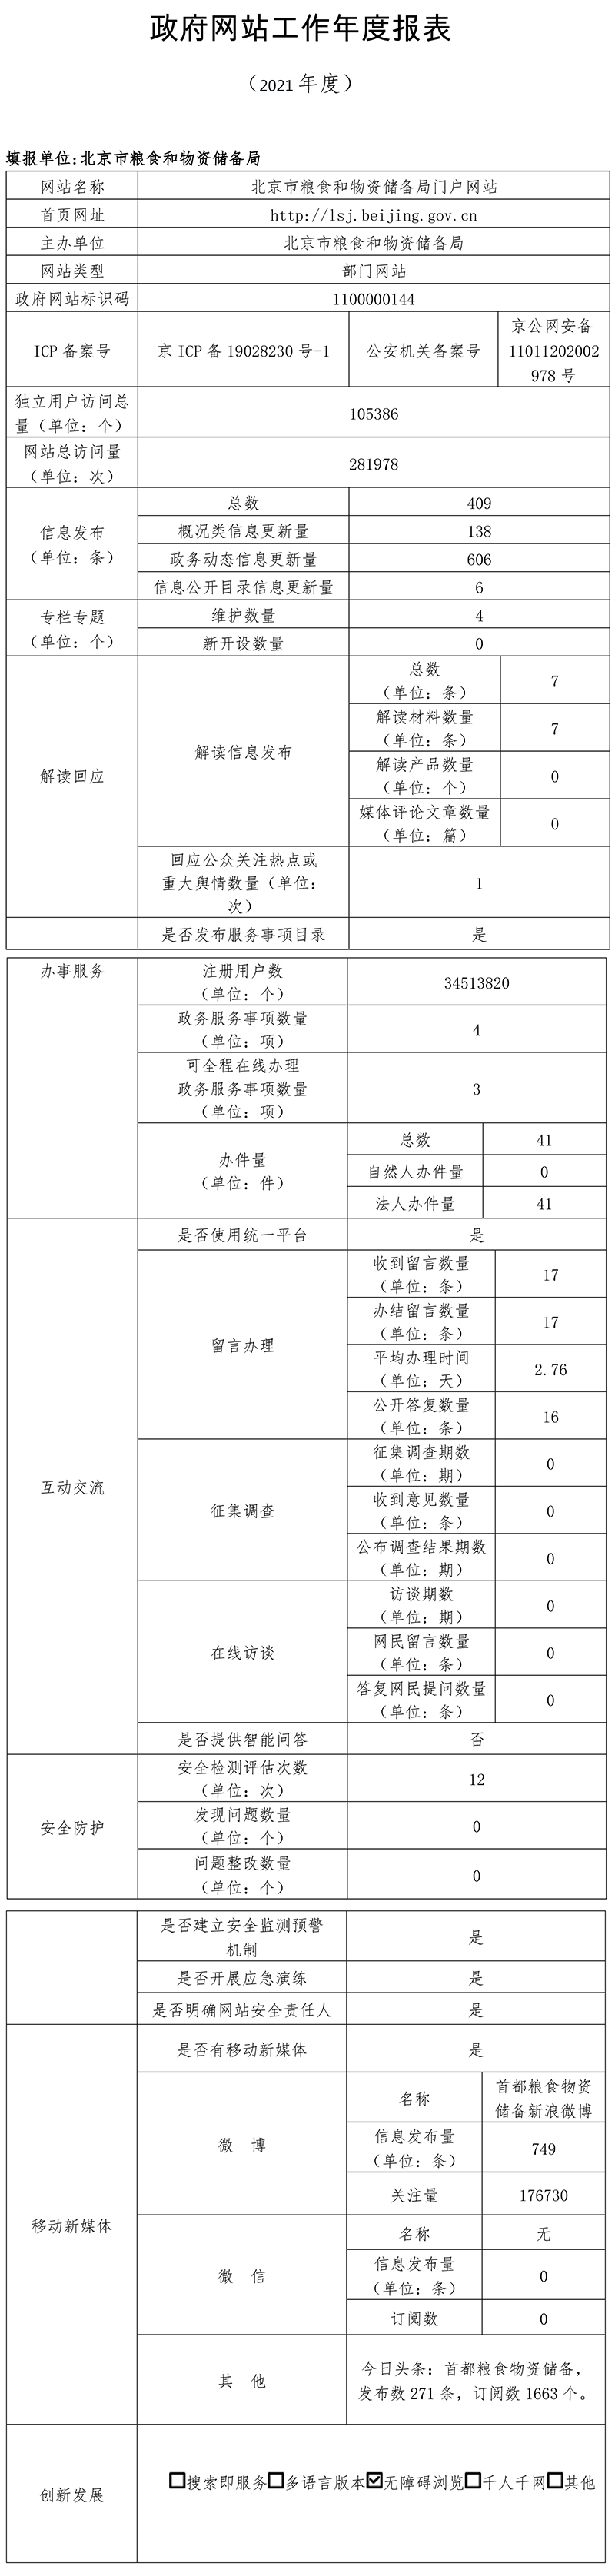 北京市粮食和物资储备局2021年政府网站年度工作报表